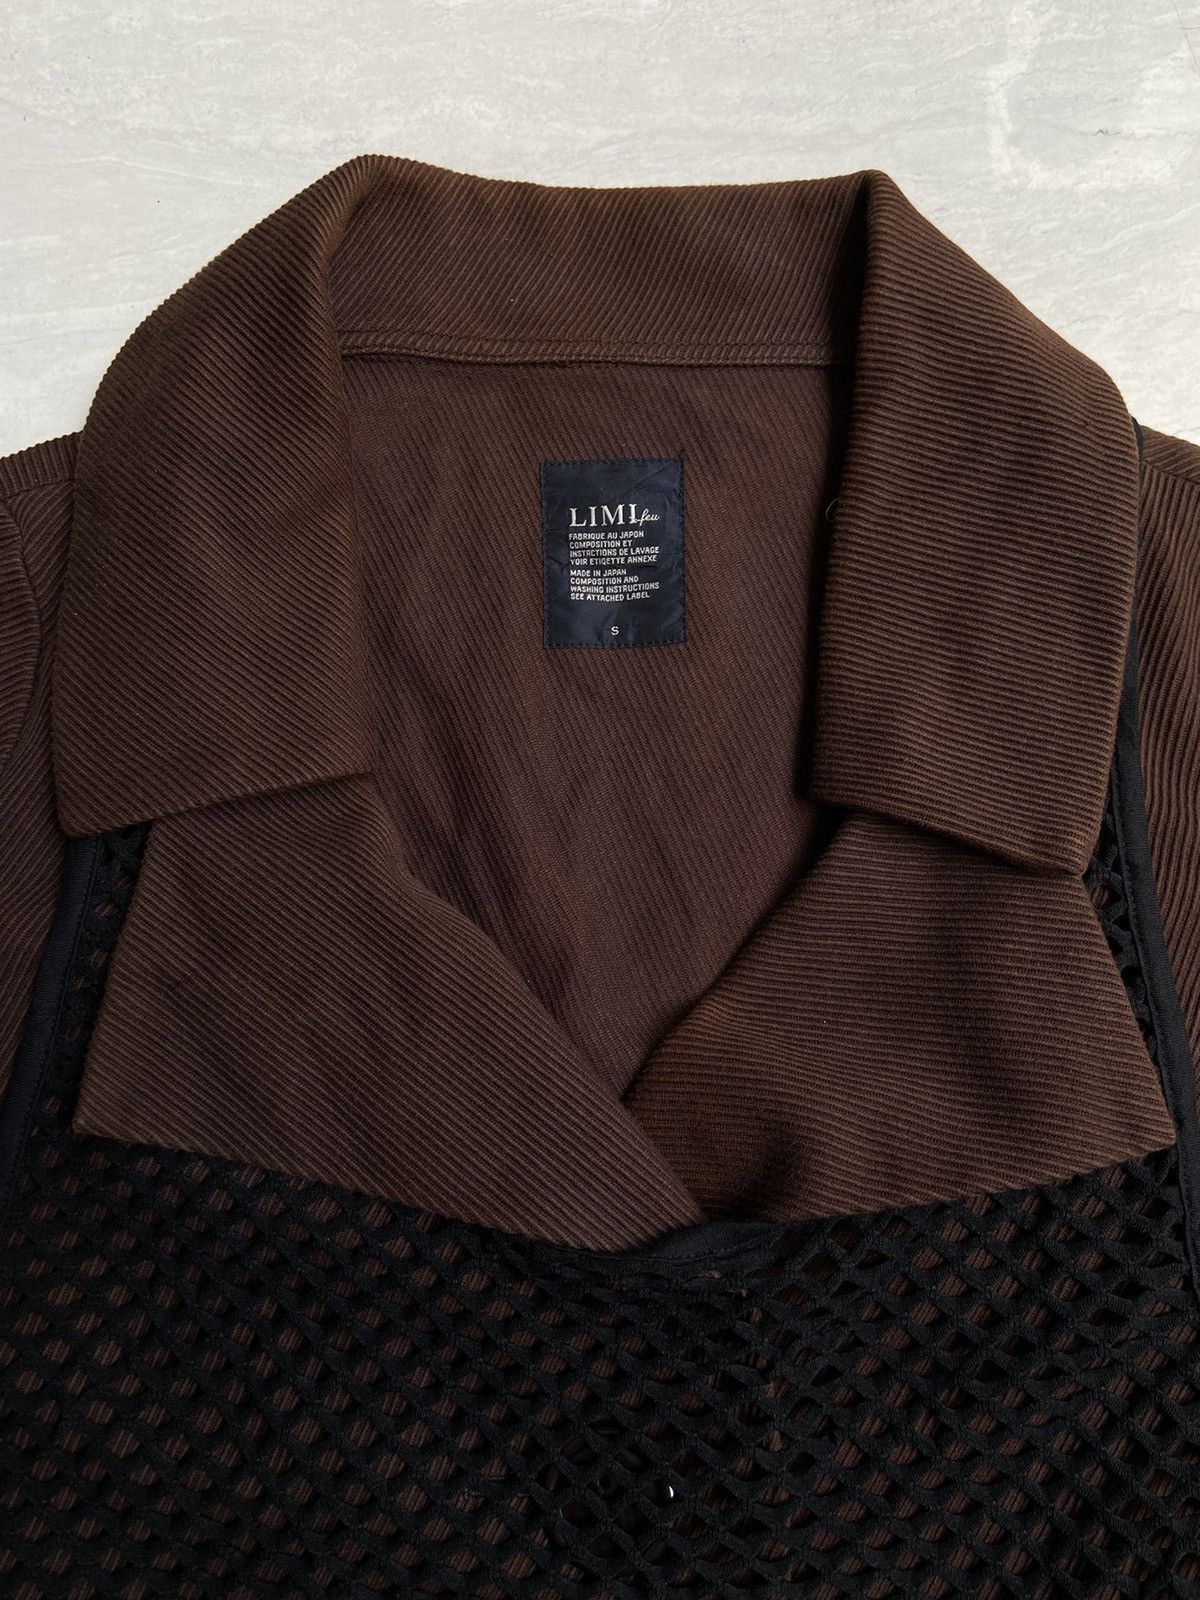 Yohji Yamamoto LIMI FEU Brown Blazer Vest Size US S / EU 44-46 / 1 - 10 Thumbnail